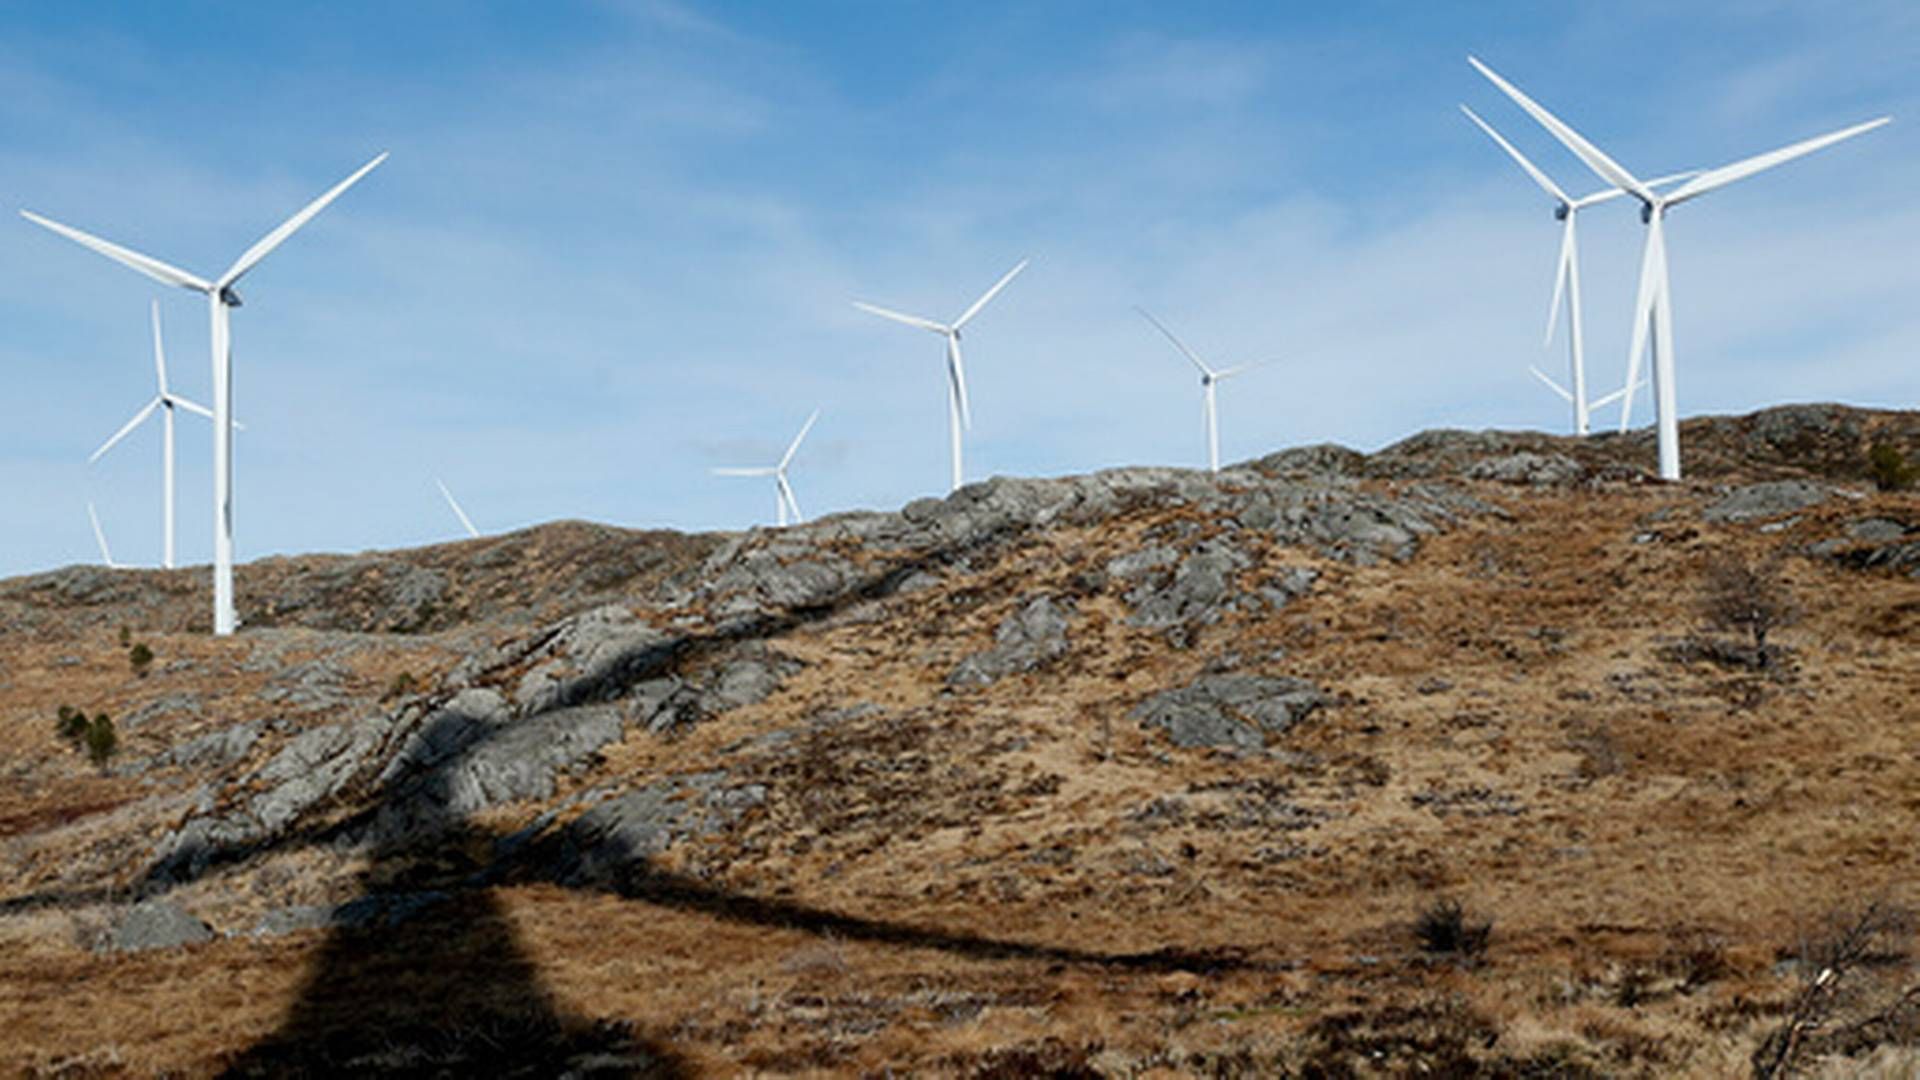 NEDGANG: SSB sier nedgangen skyldes at det bygges ut mindre vindkraft enn før. Her fra Midtfjellet vindpark i Fitjar kommune. | Foto: Jan Kåre Ness / NTB